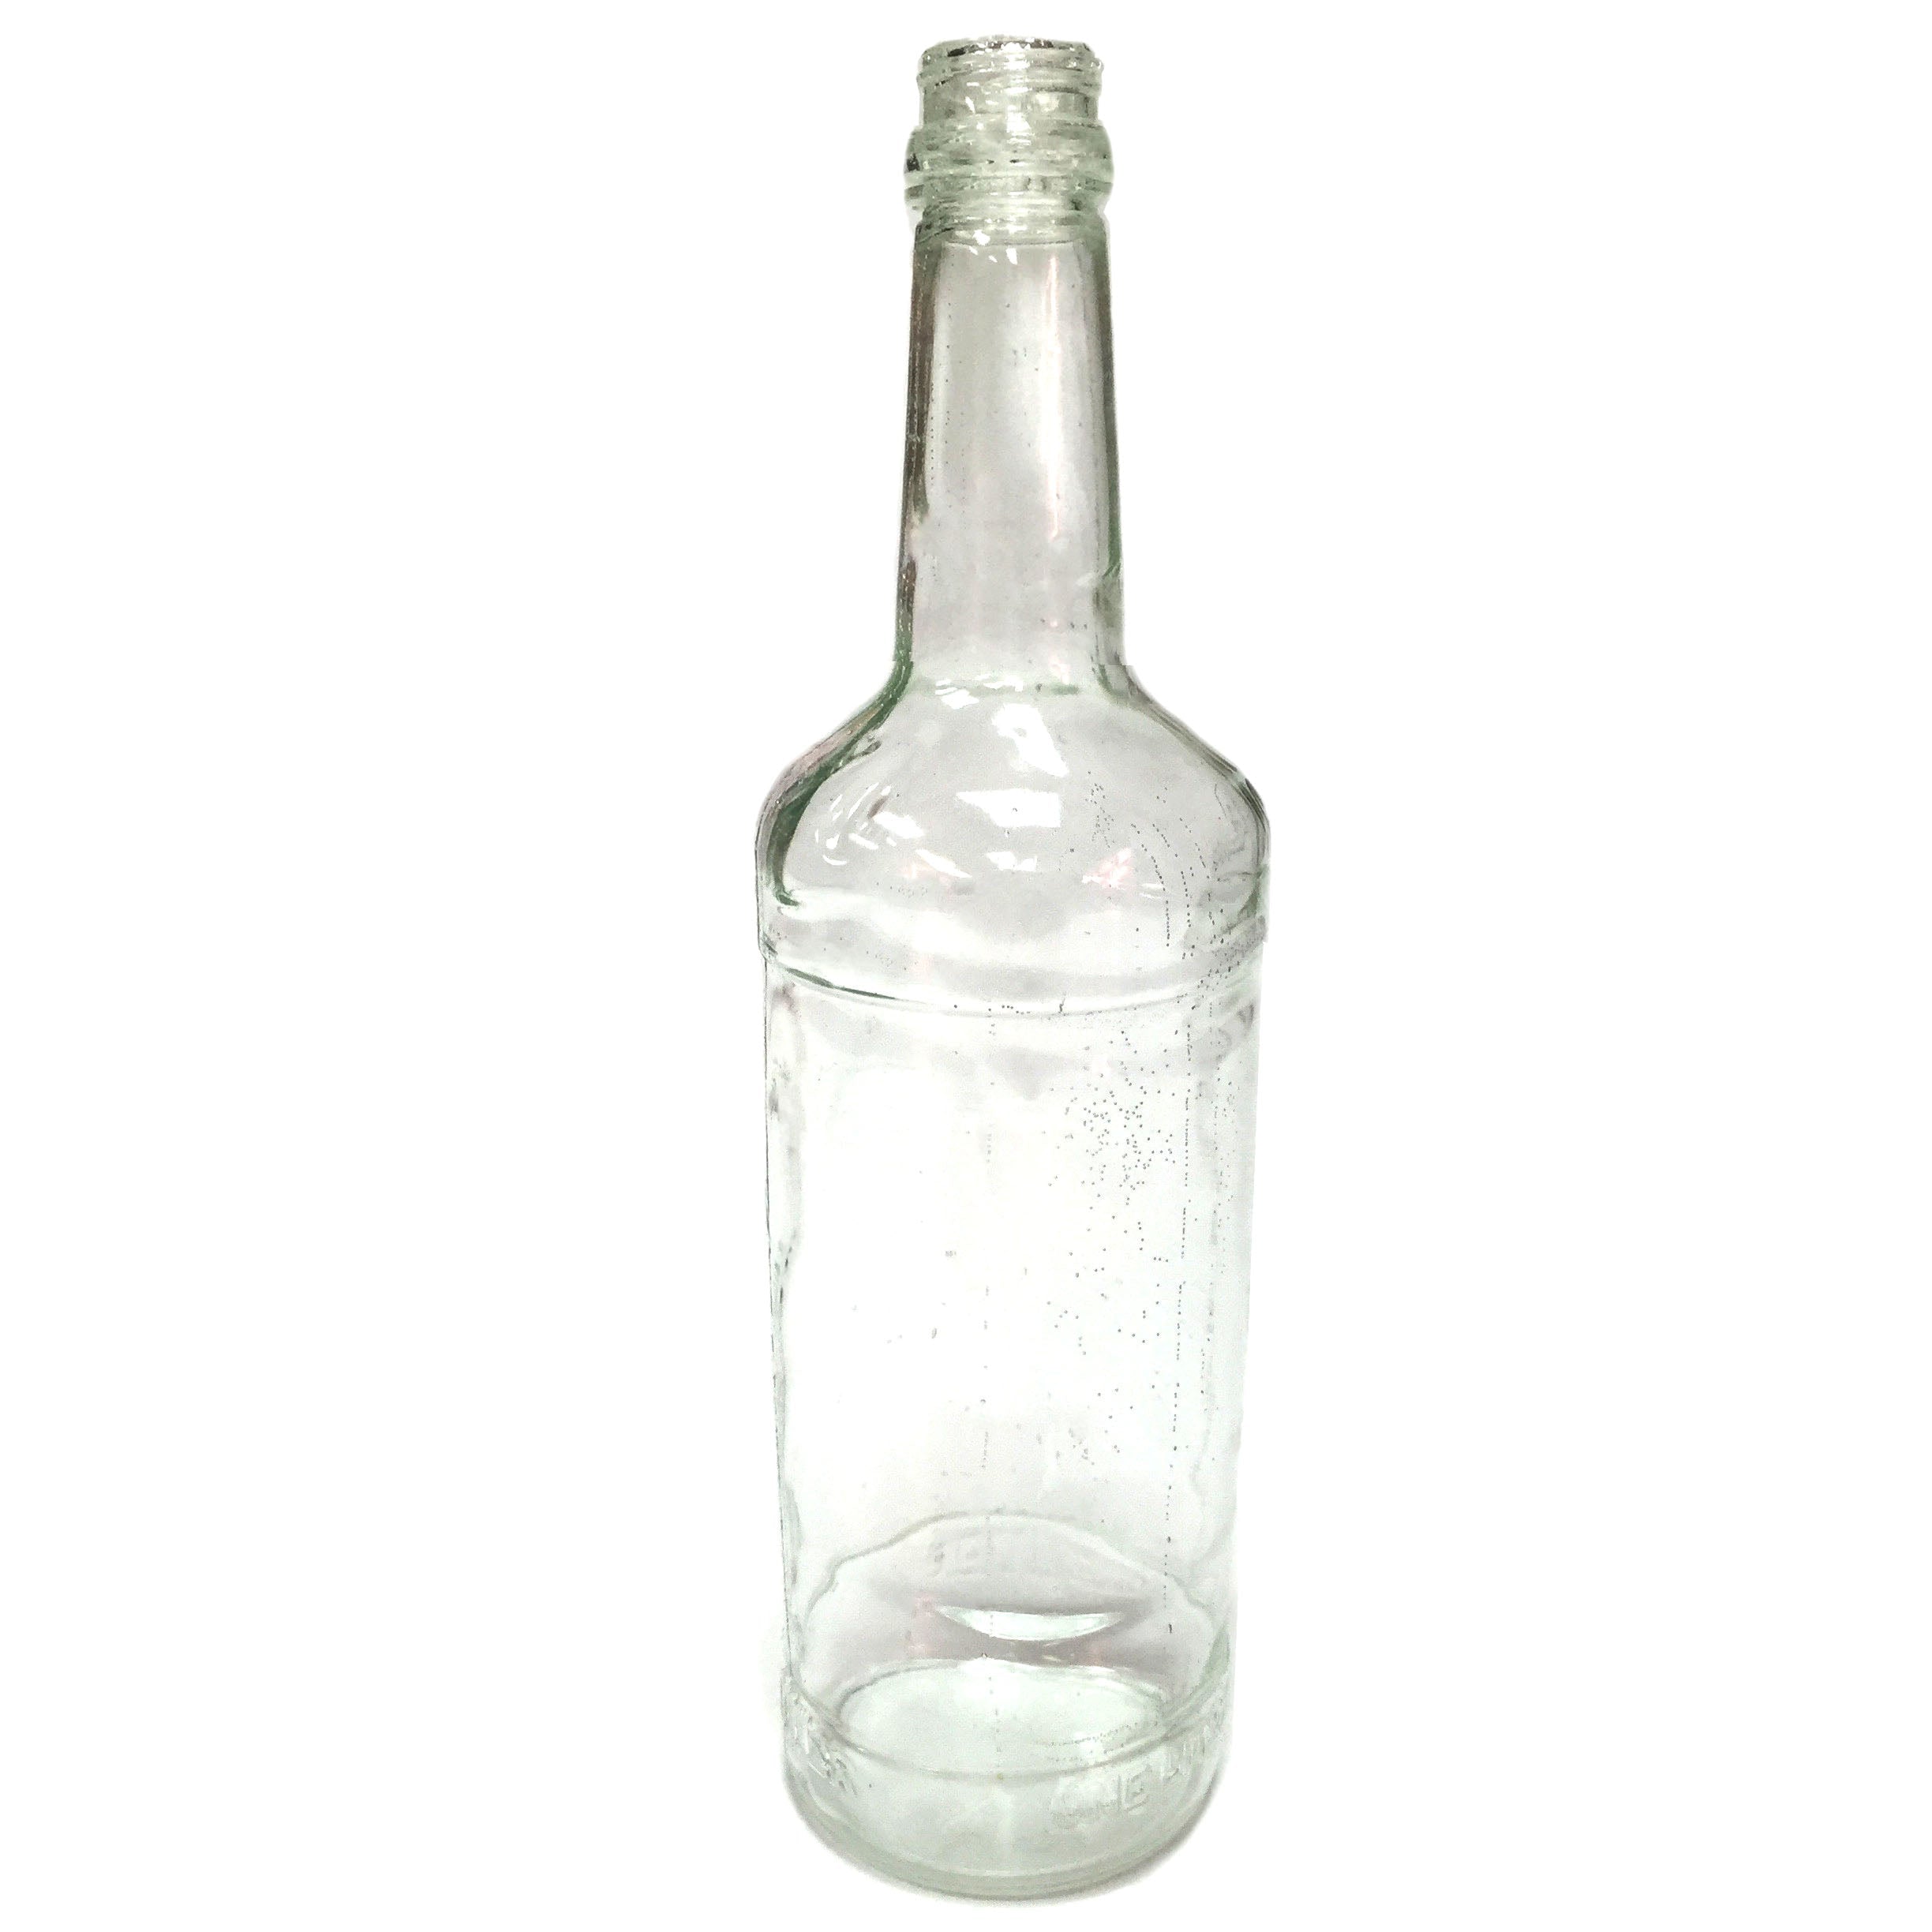 SMASHProps Breakaway Russian Vodka Bottle Prop - CLEAR - Clear